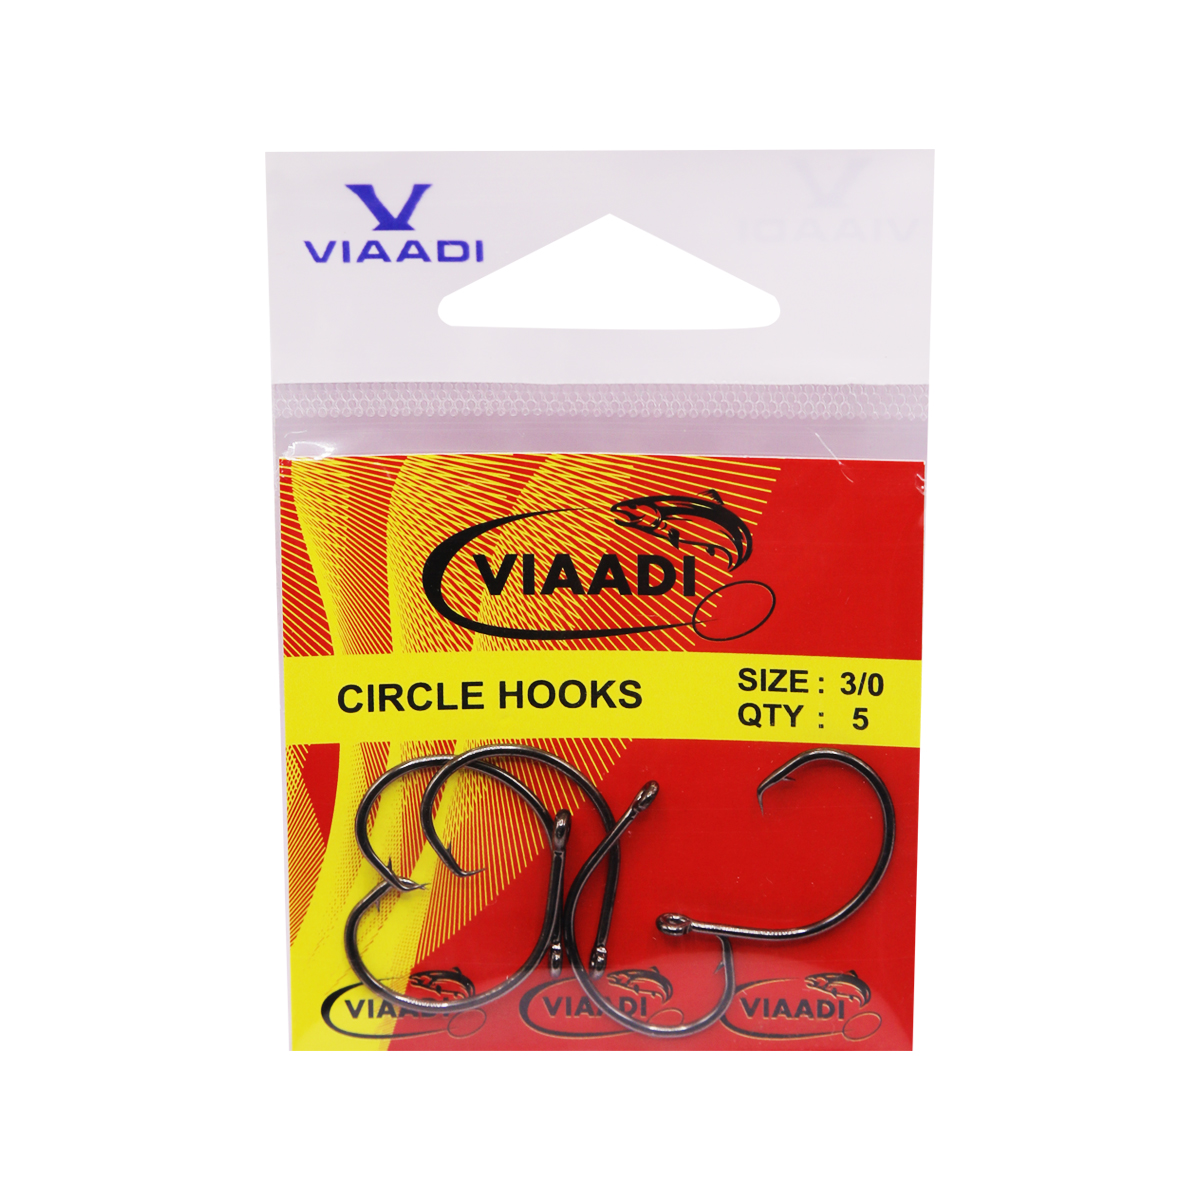 VIAADI CIRCLE HOOKS 3/0 – Viaadi